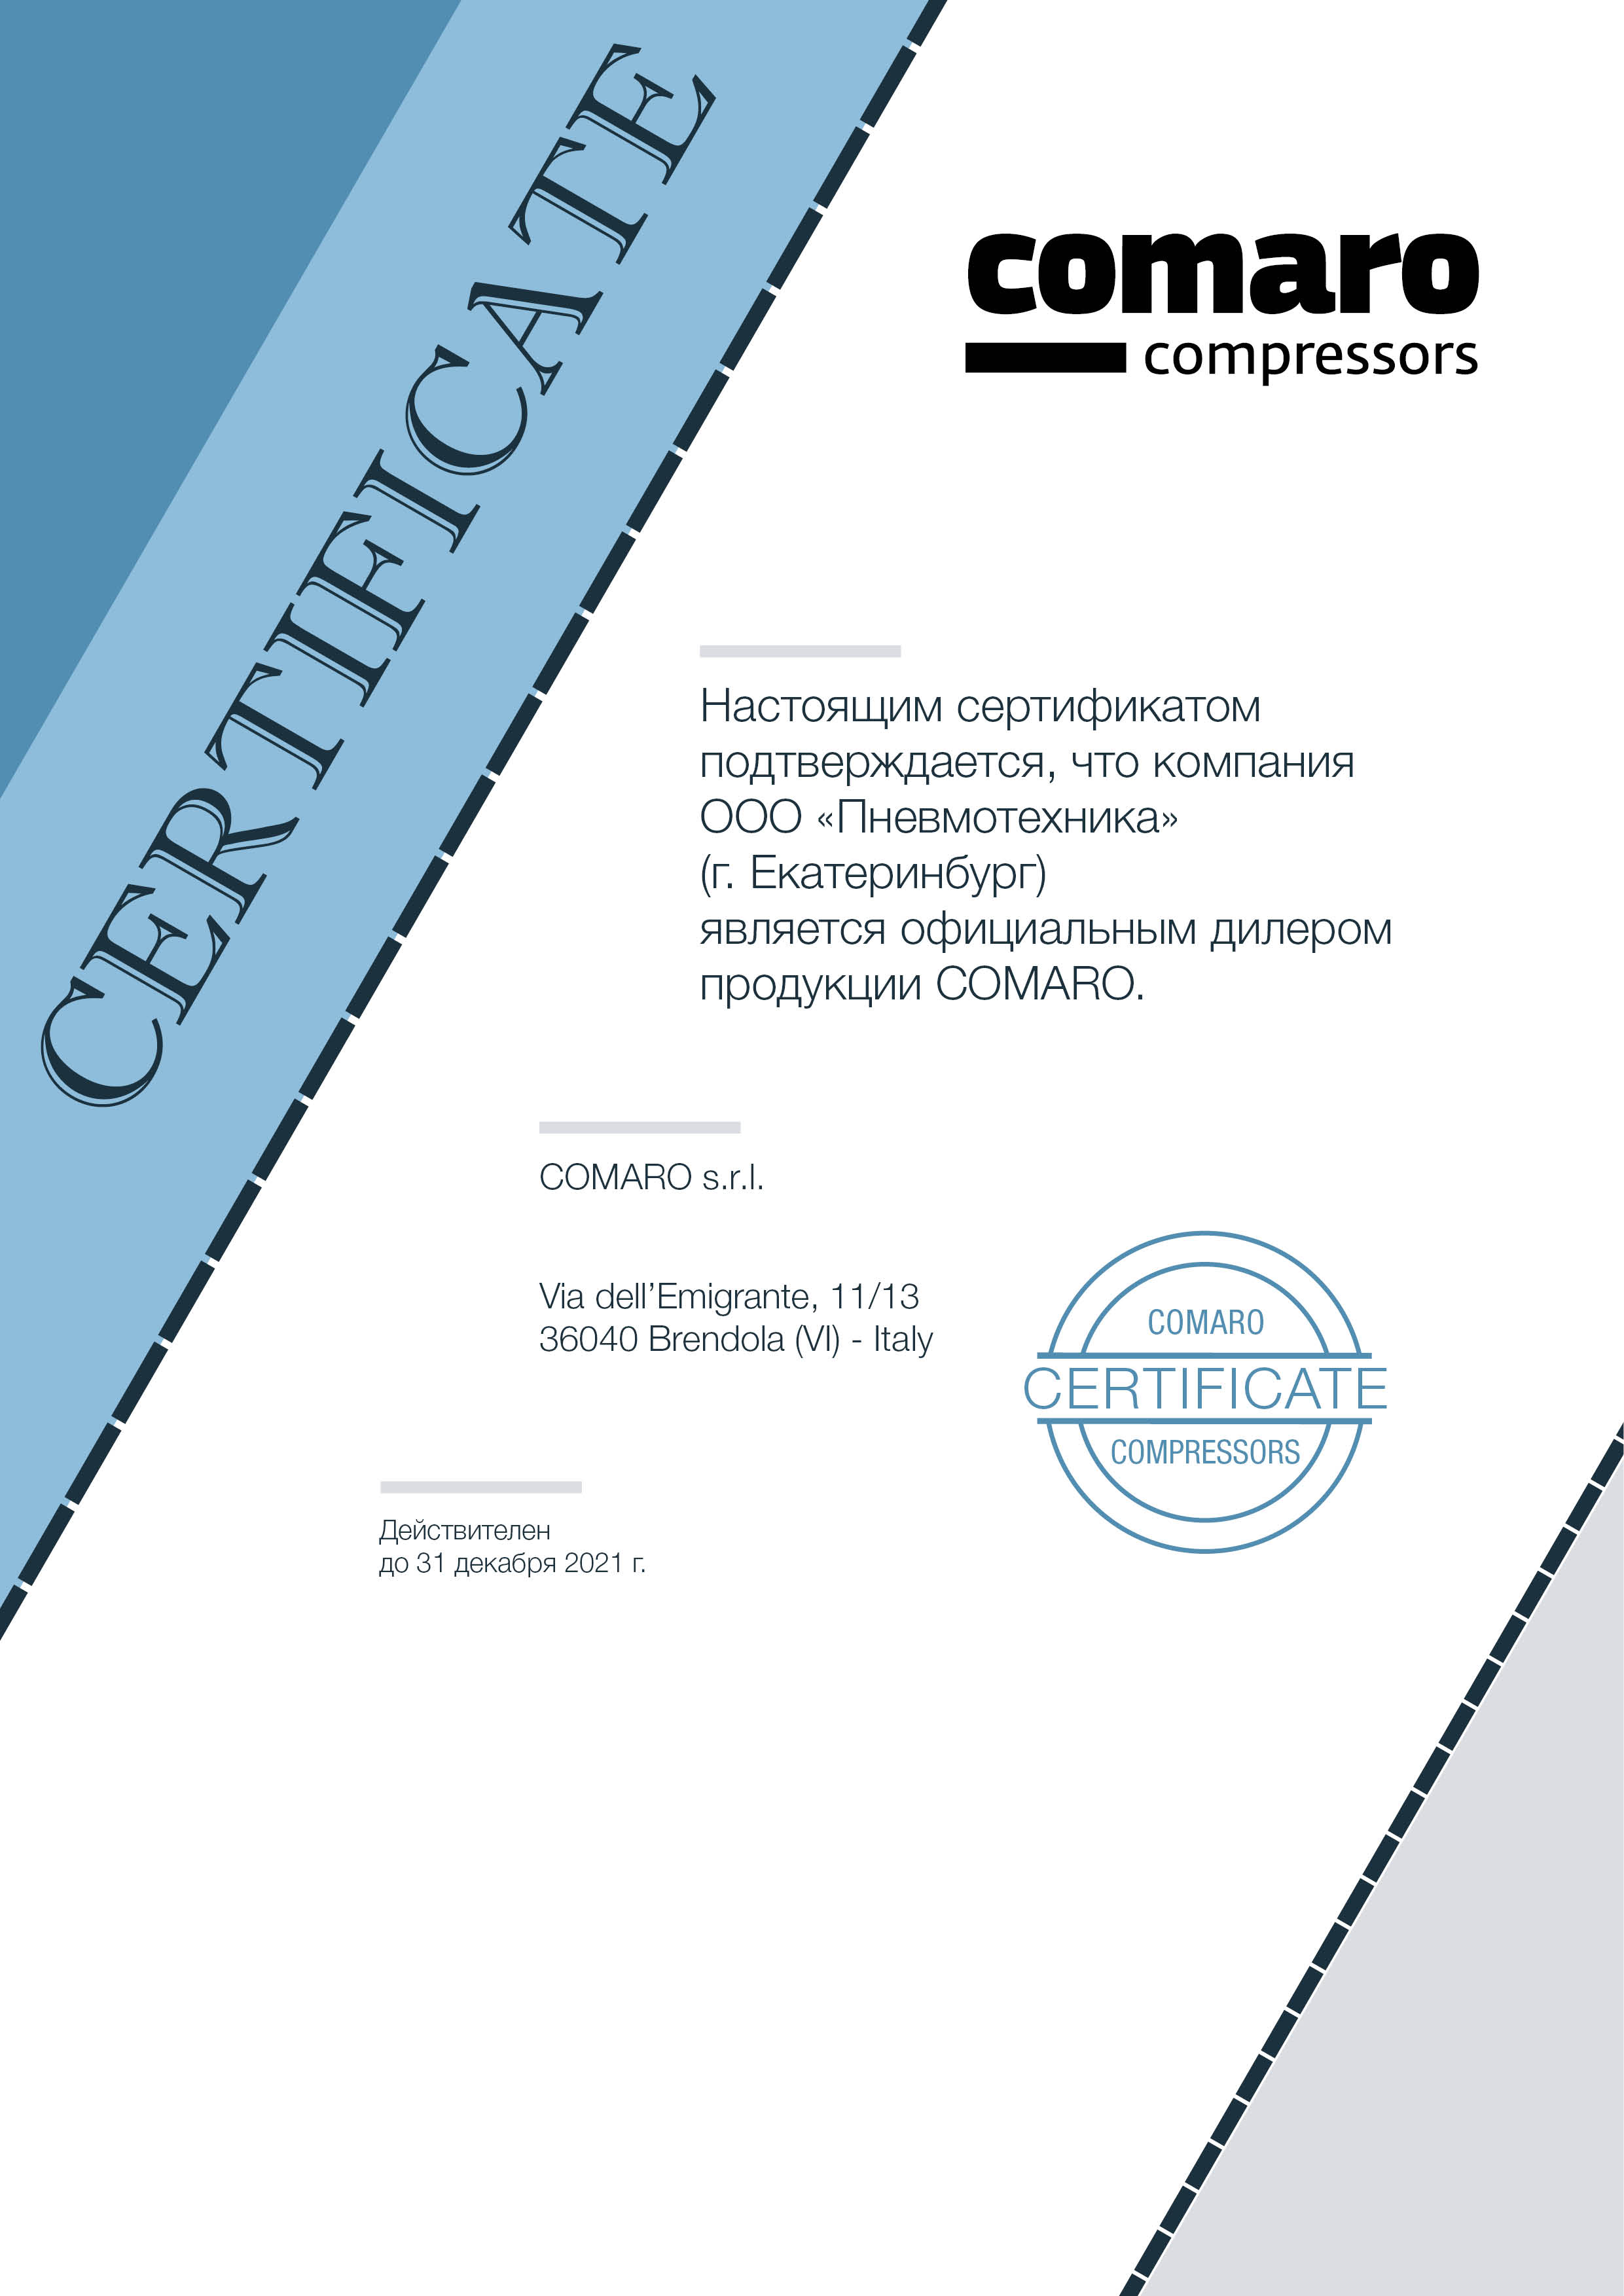 Сертификат, подтверждающий, что ООО «Пневмотехника» является официальным дилером продукции COMARO в 2021 году